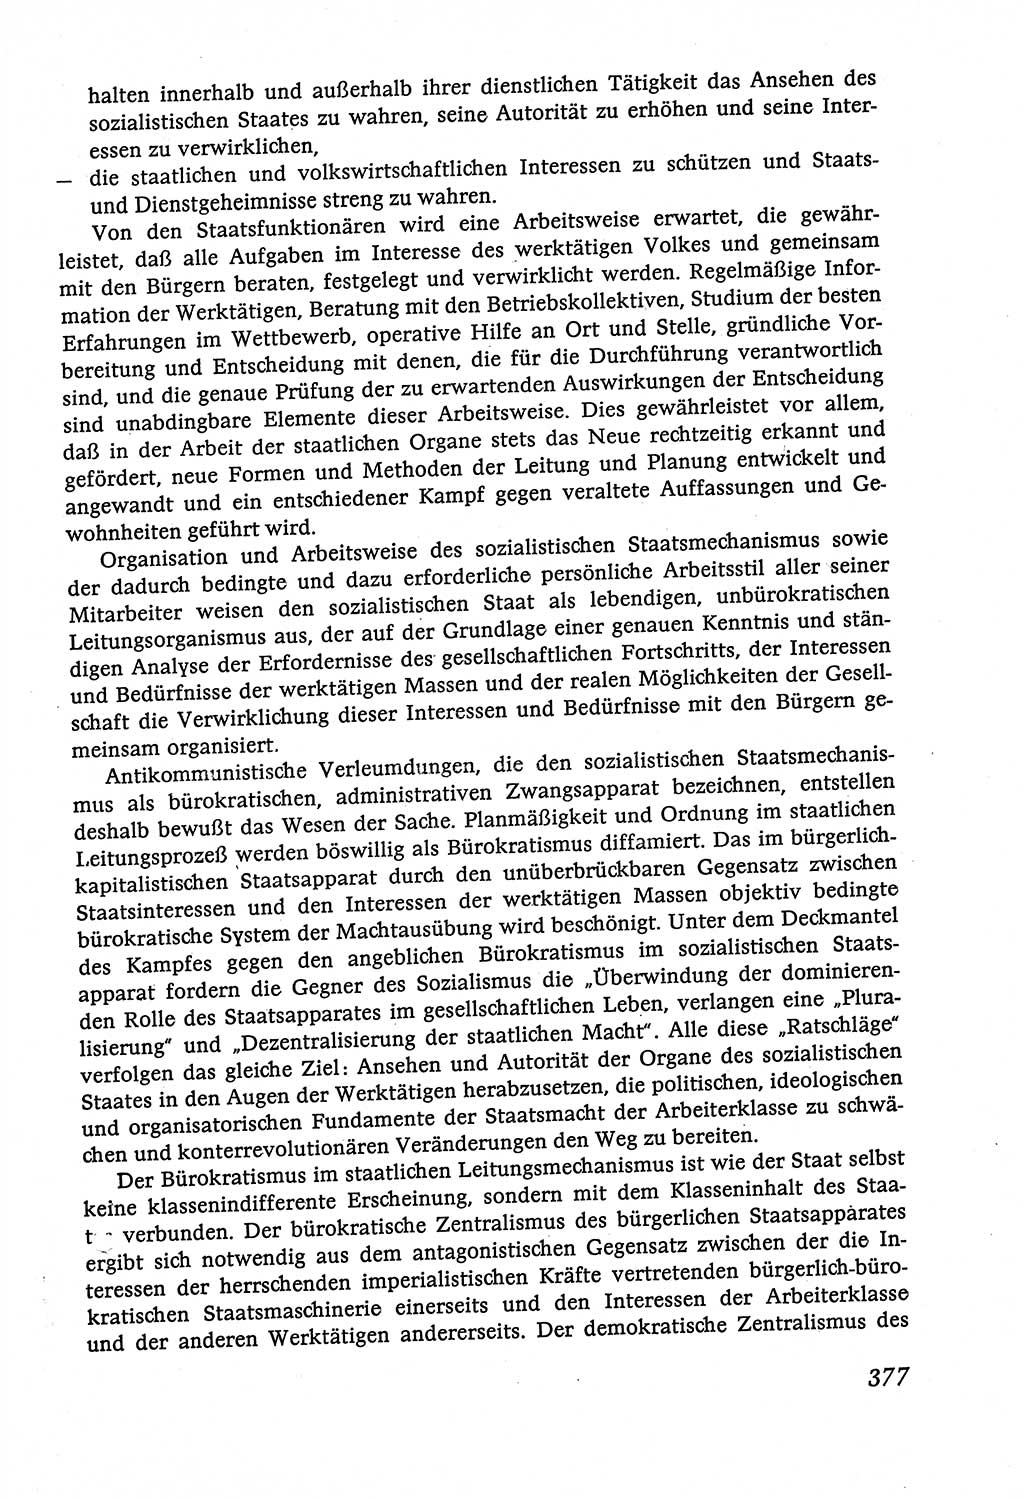 Marxistisch-leninistische (ML) Staats- und Rechtstheorie [Deutsche Demokratische Republik (DDR)], Lehrbuch 1980, Seite 377 (ML St.-R.-Th. DDR Lb. 1980, S. 377)